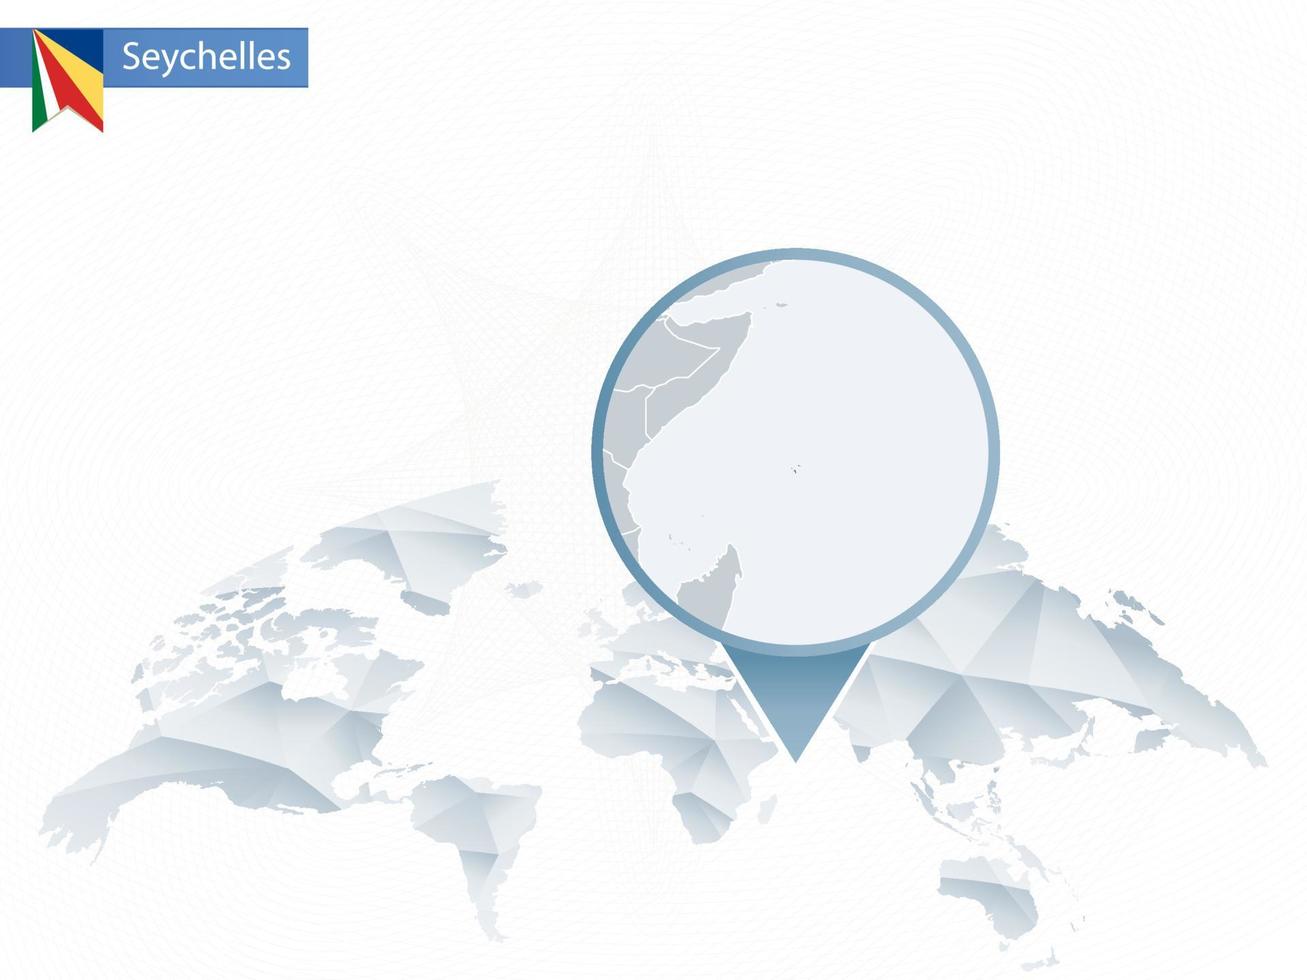 mapa del mundo redondeado abstracto con mapa de seychelles detallado anclado. vector